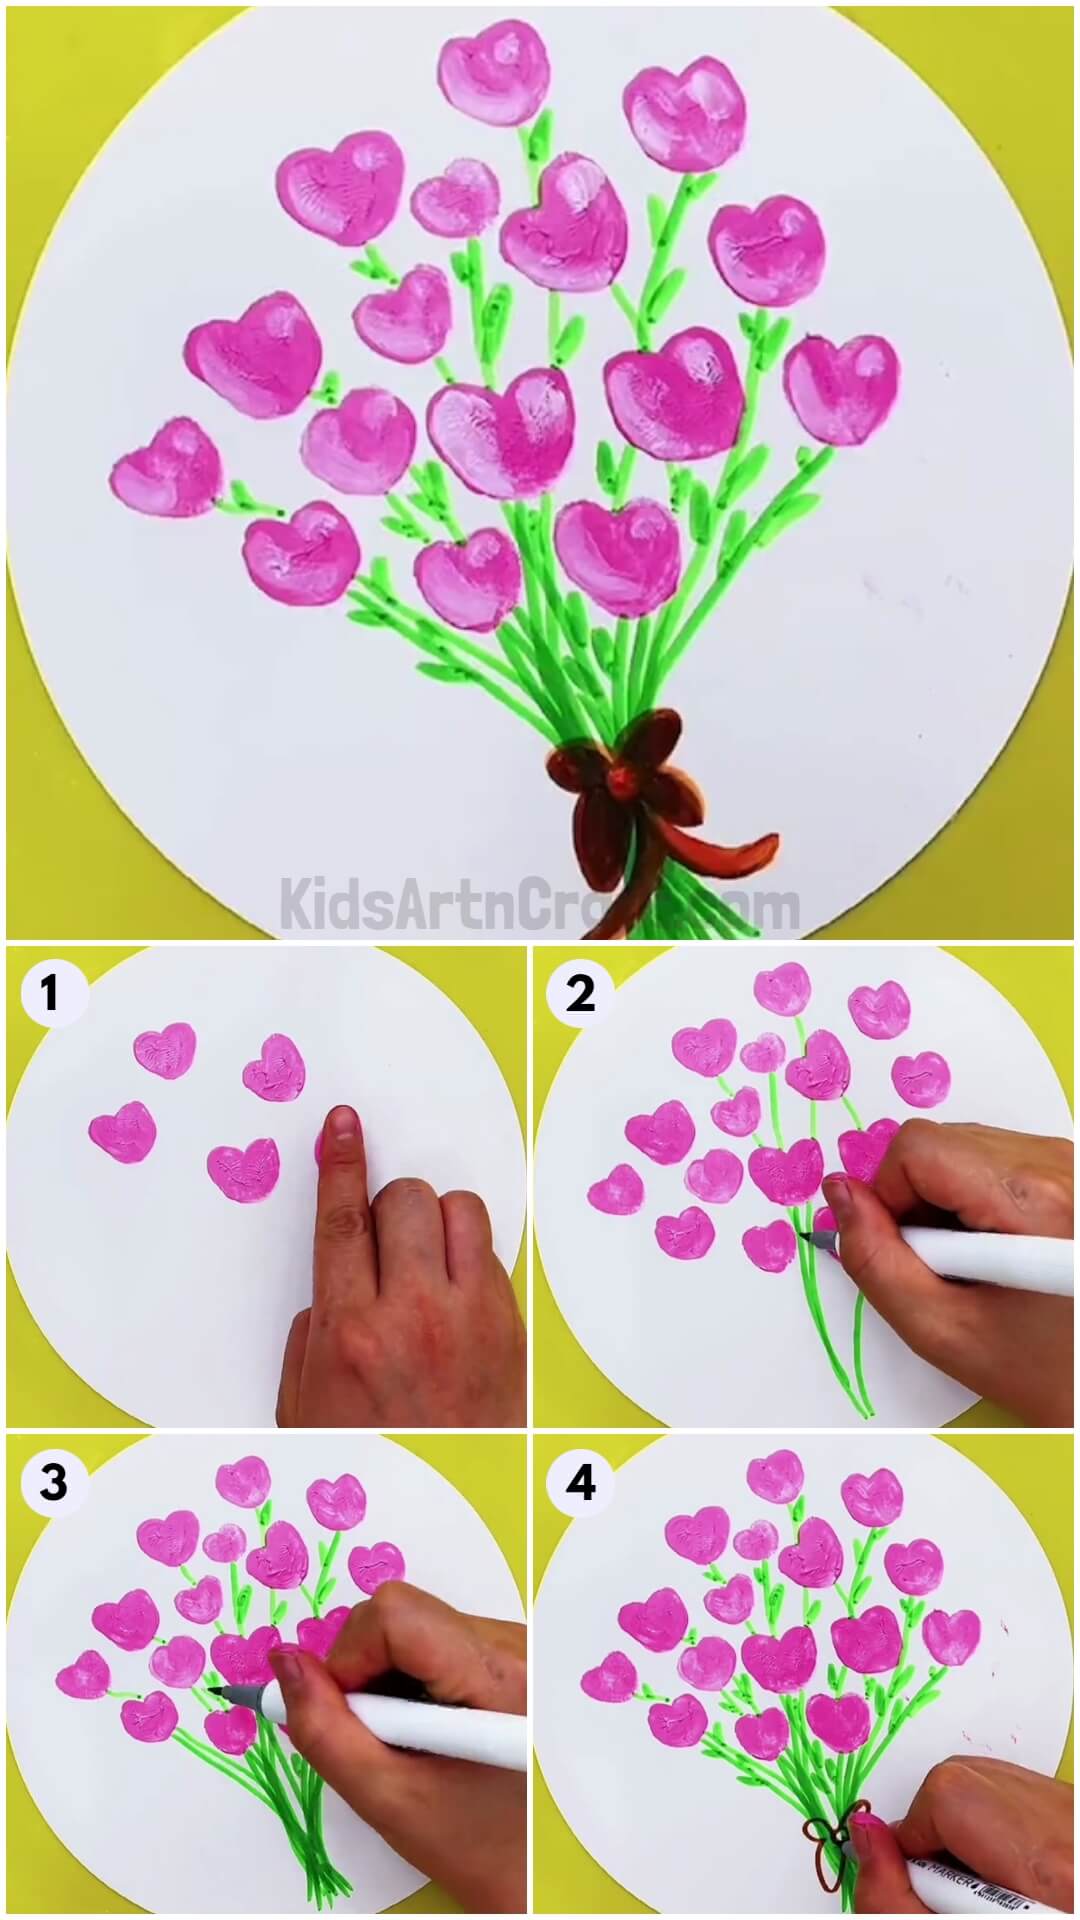 Heart Flower Bouquet Art Step by Step Tutorial For Kids-Step-by-Step Tutorial for Crafting a Heart Flower Bouquet for Kids